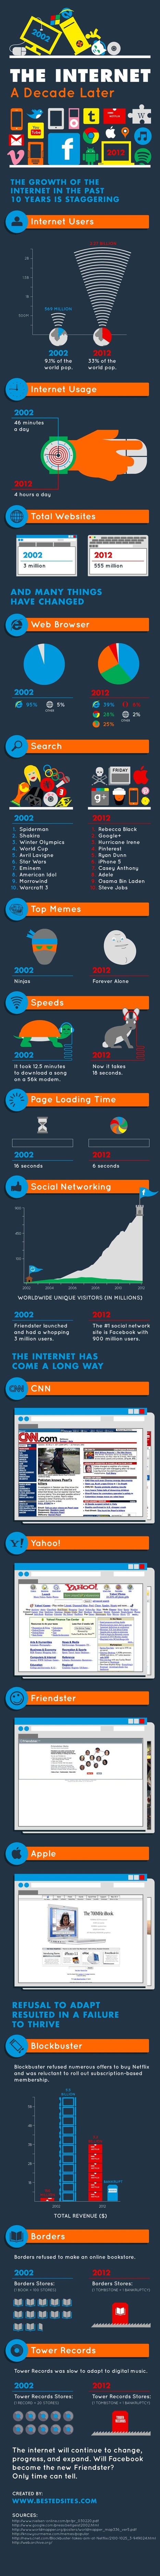 Internet Decade Later - Infographic... | omnia mea mecum fero | Scoop.it